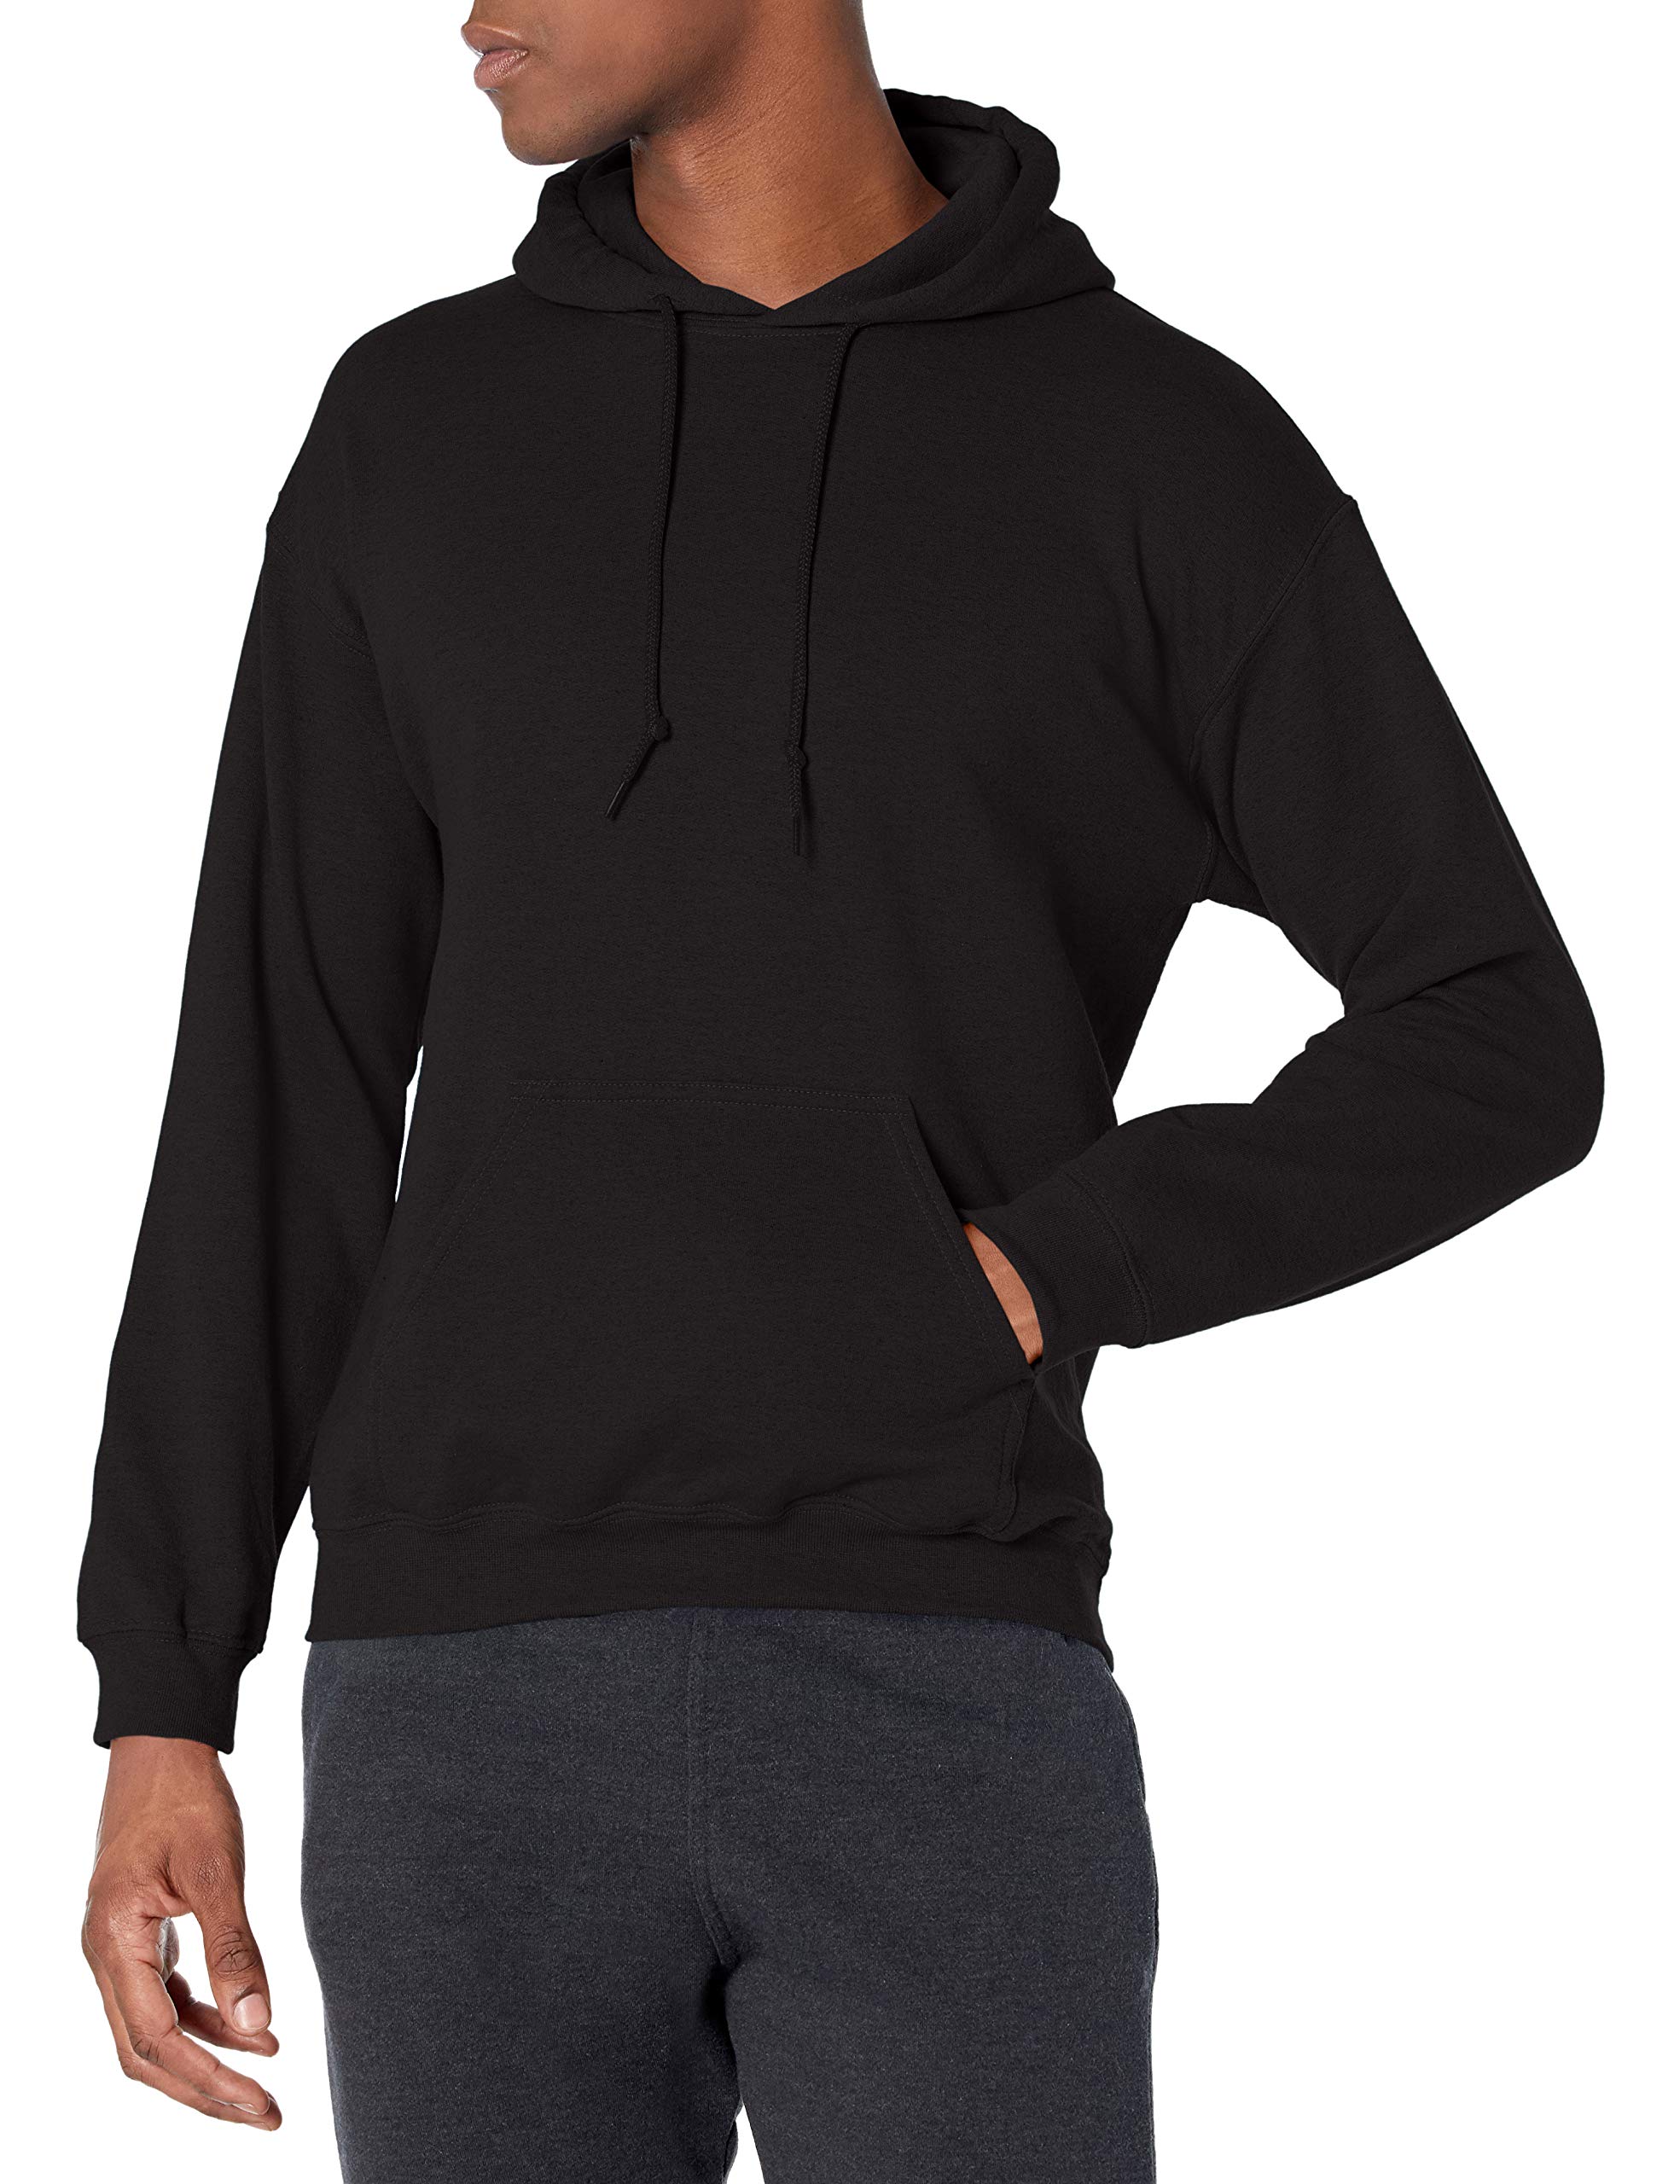 Gildan Heavy Blend Adult Unisex Hooded Sweatshirt/Hoodie Black - Large